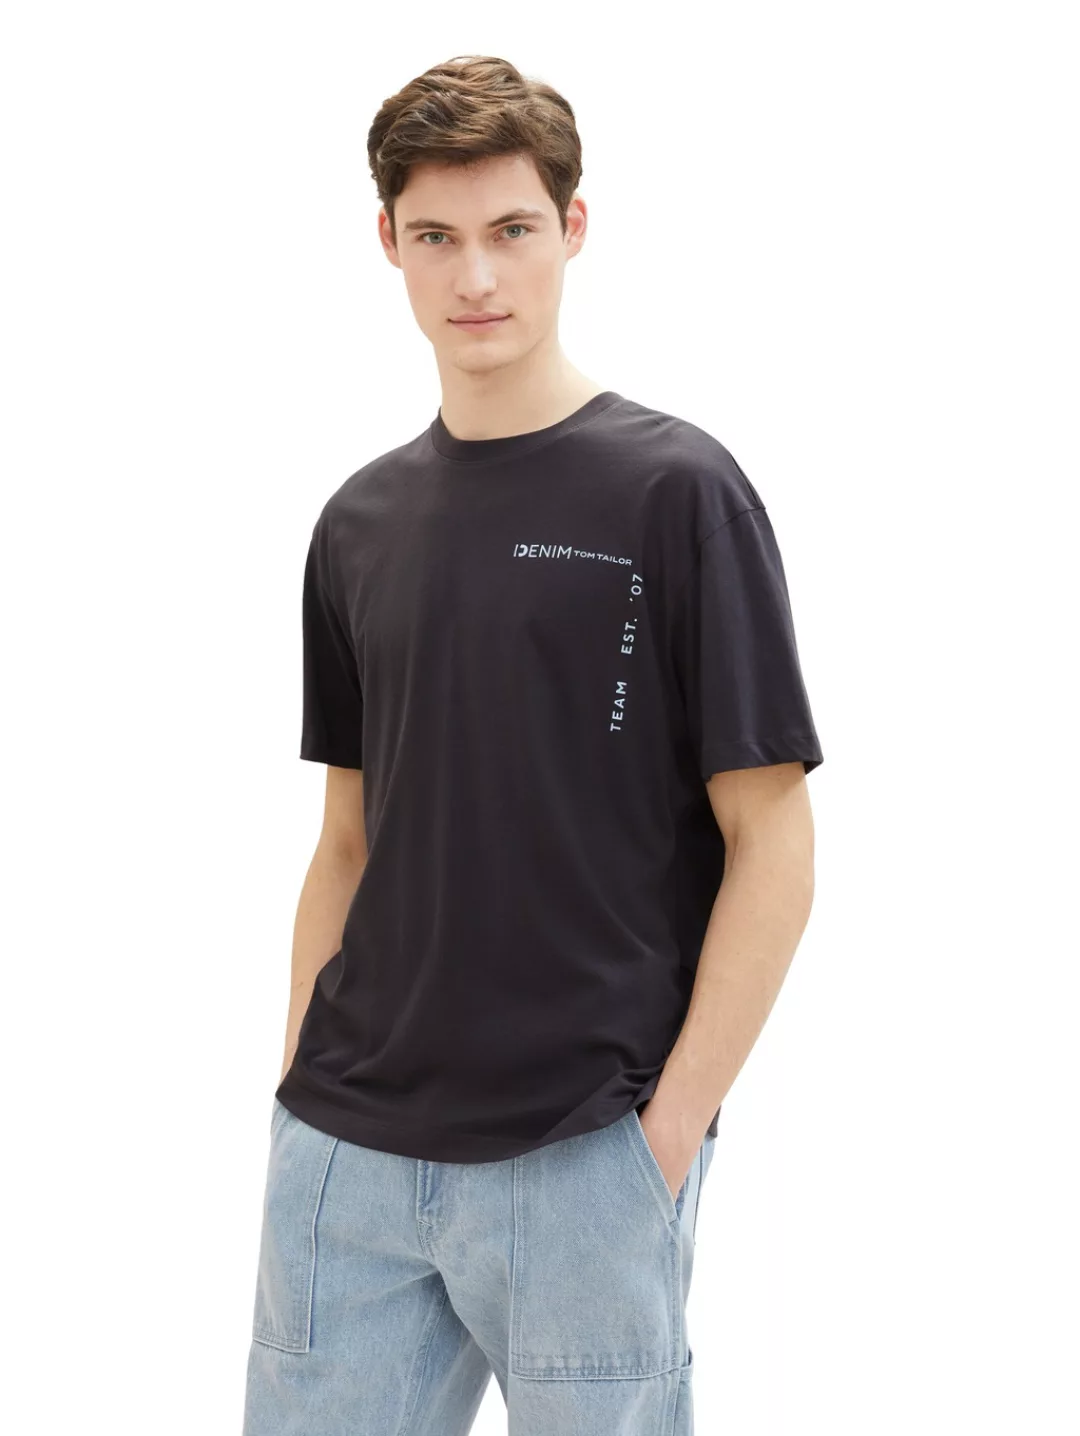 TOM TAILOR Denim T-Shirt, mit großen Print auf dem Rücken günstig online kaufen